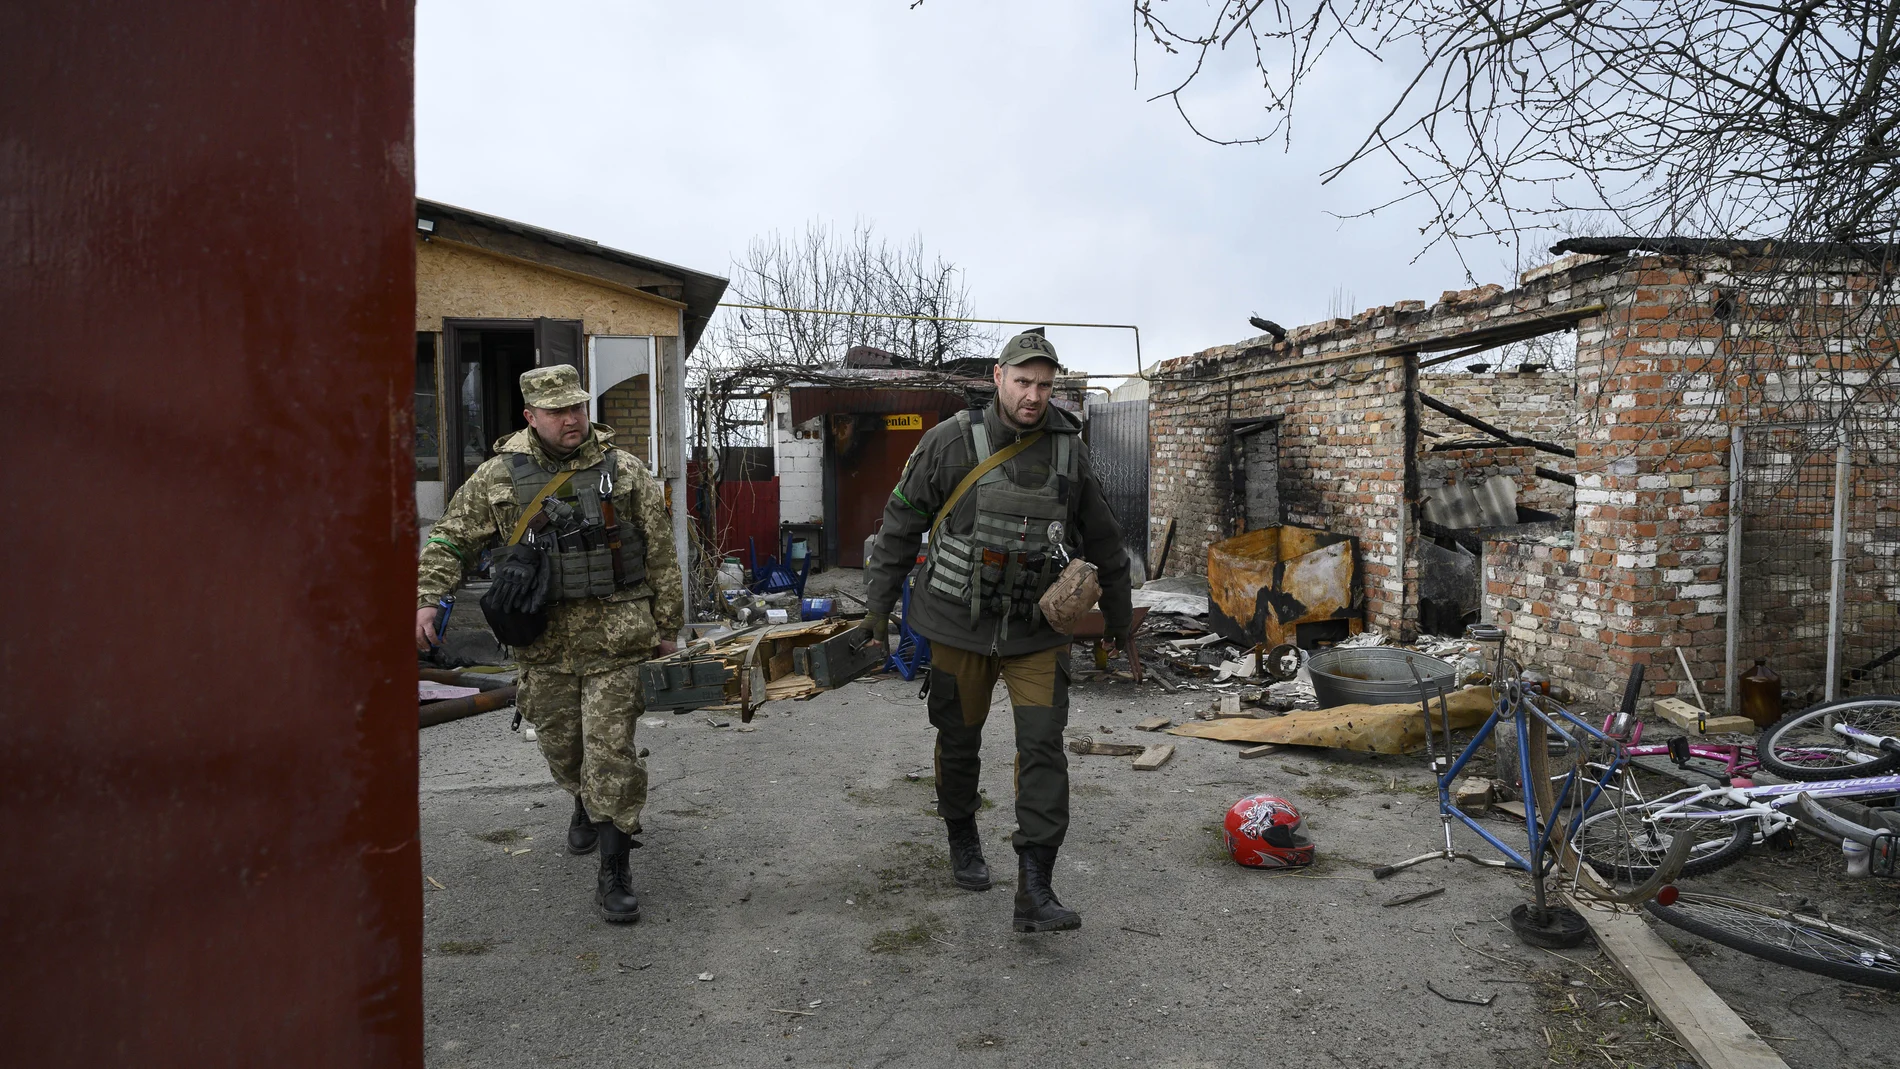 AMP.- Ucrania.- Ucrania anuncia la liberación de la localidad de Andrivka tras ser desmentida en la víspera